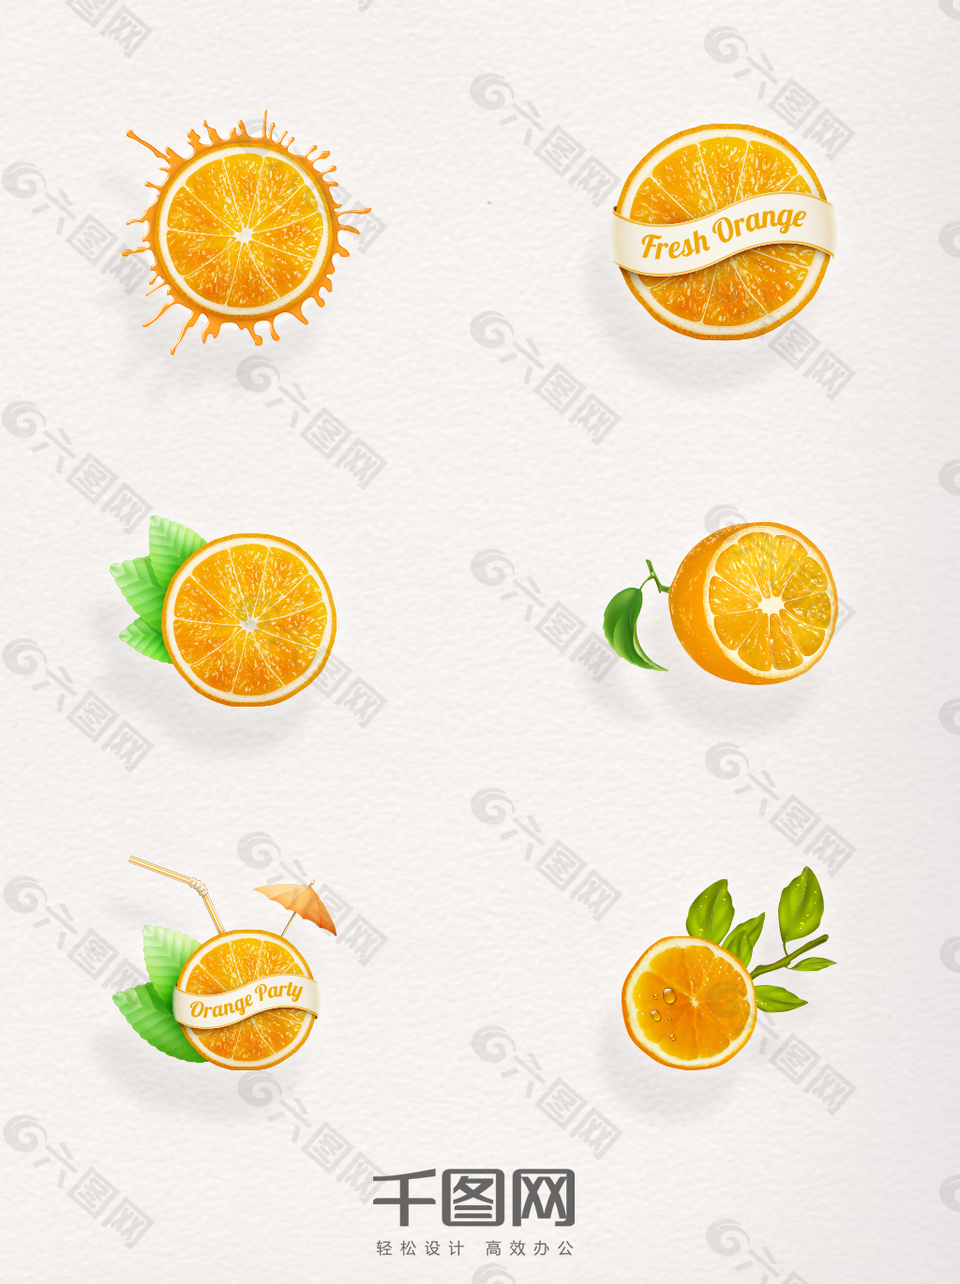 精致切开的橙子心想事橙平安夜水果